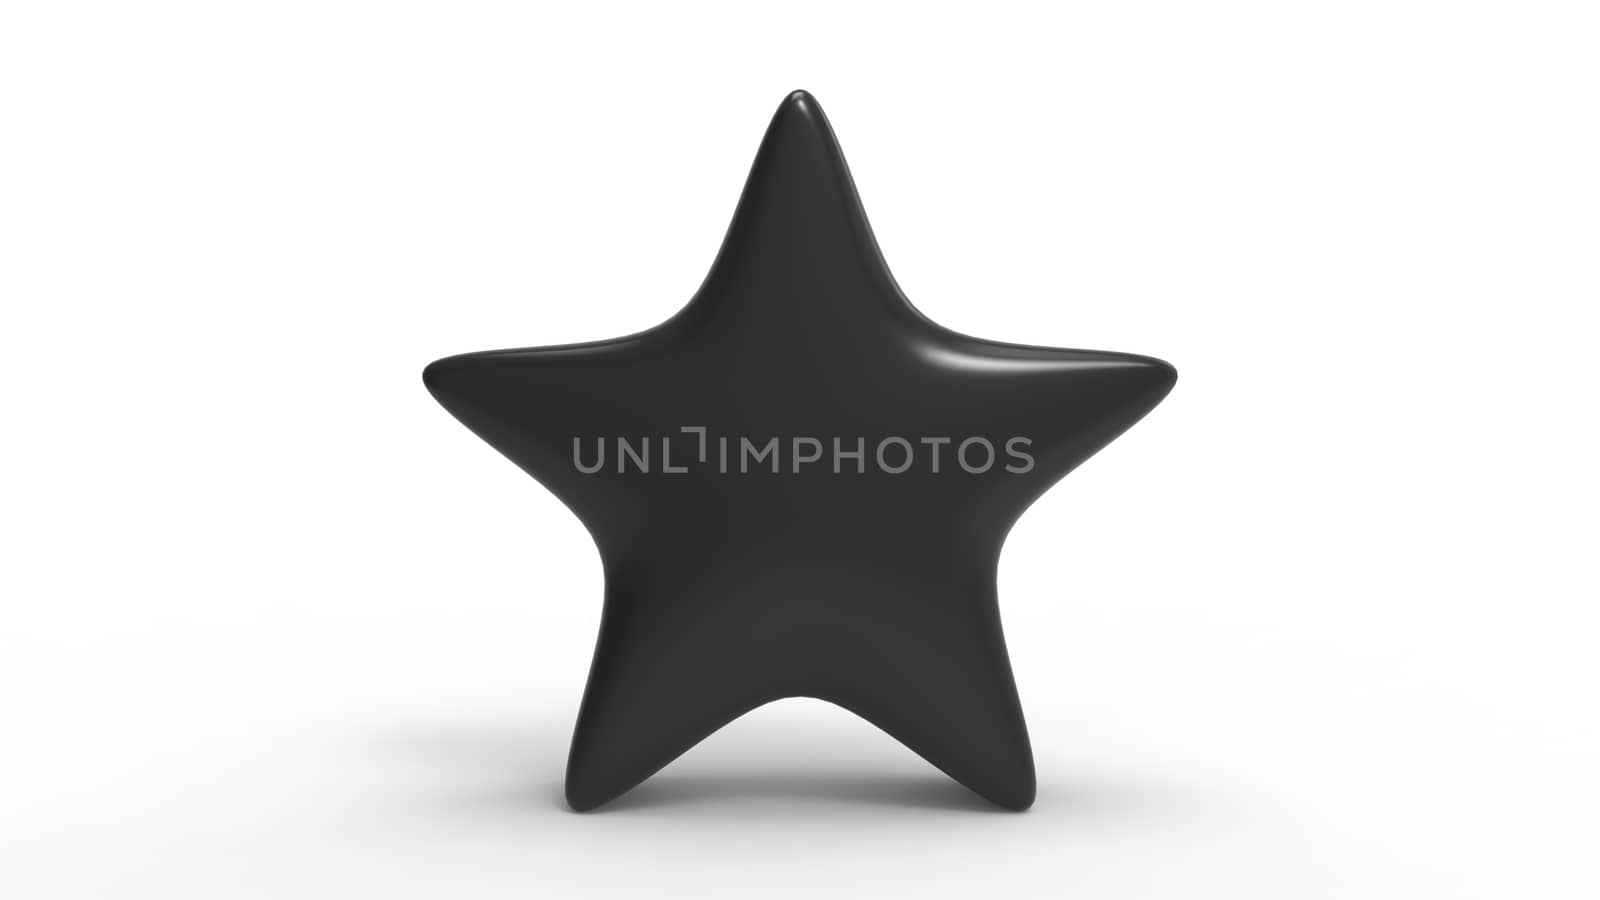 3d black star on white background. Render and illustration of golden star for premium